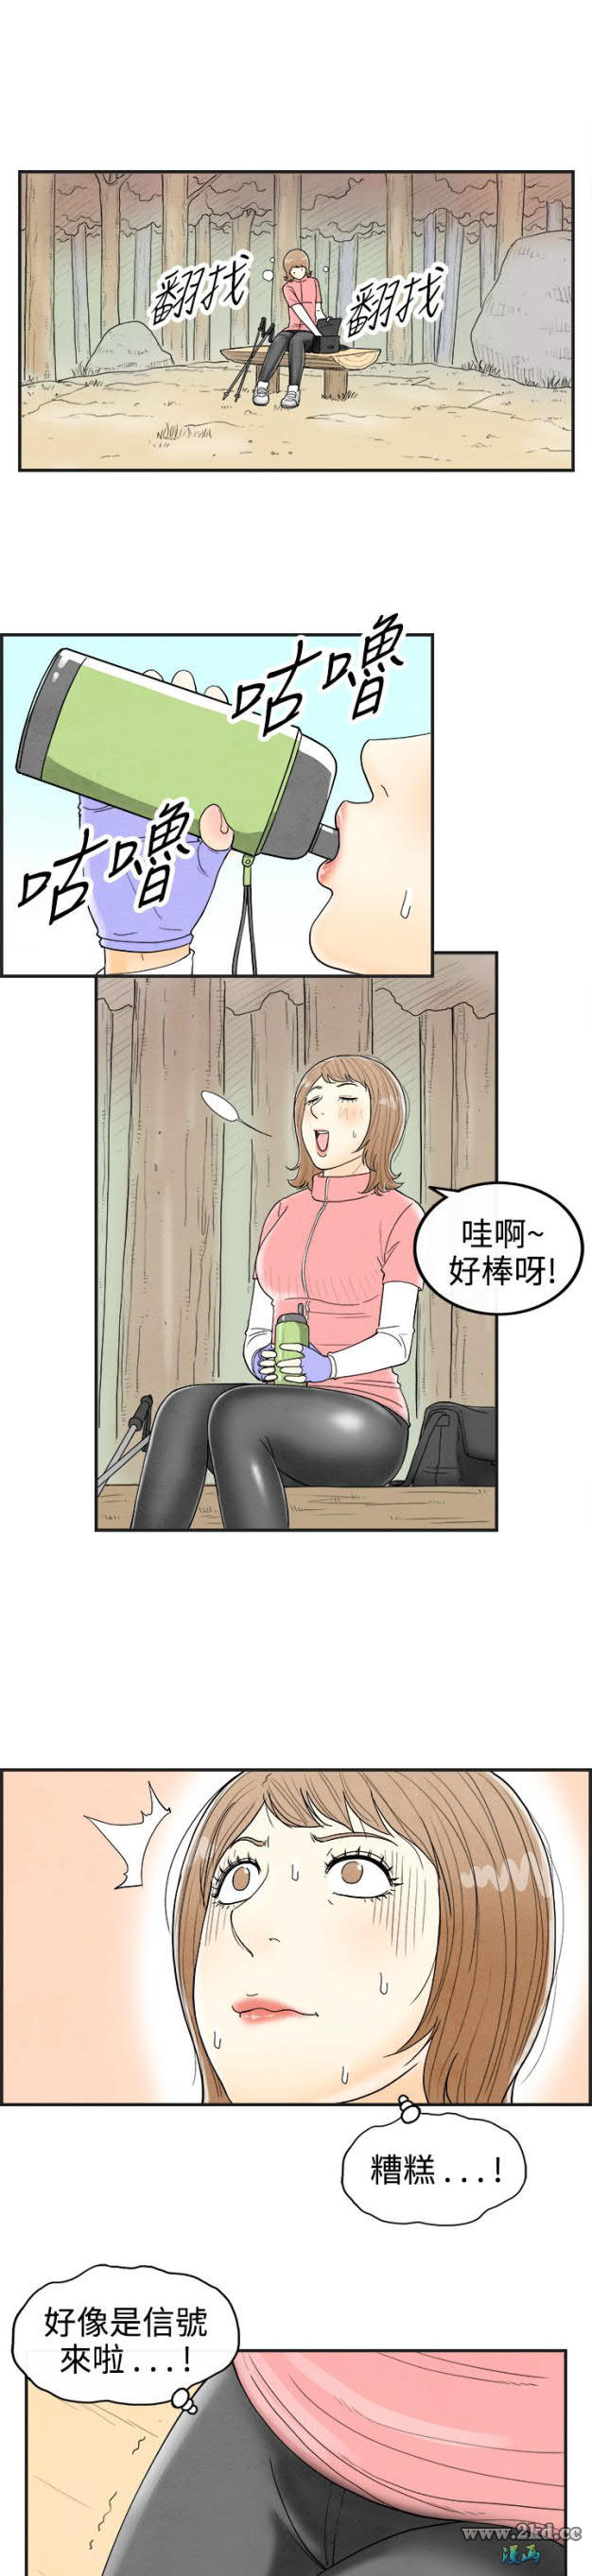 《离婚报告书》漫画 第33话-迷恋角色扮演的老婆 